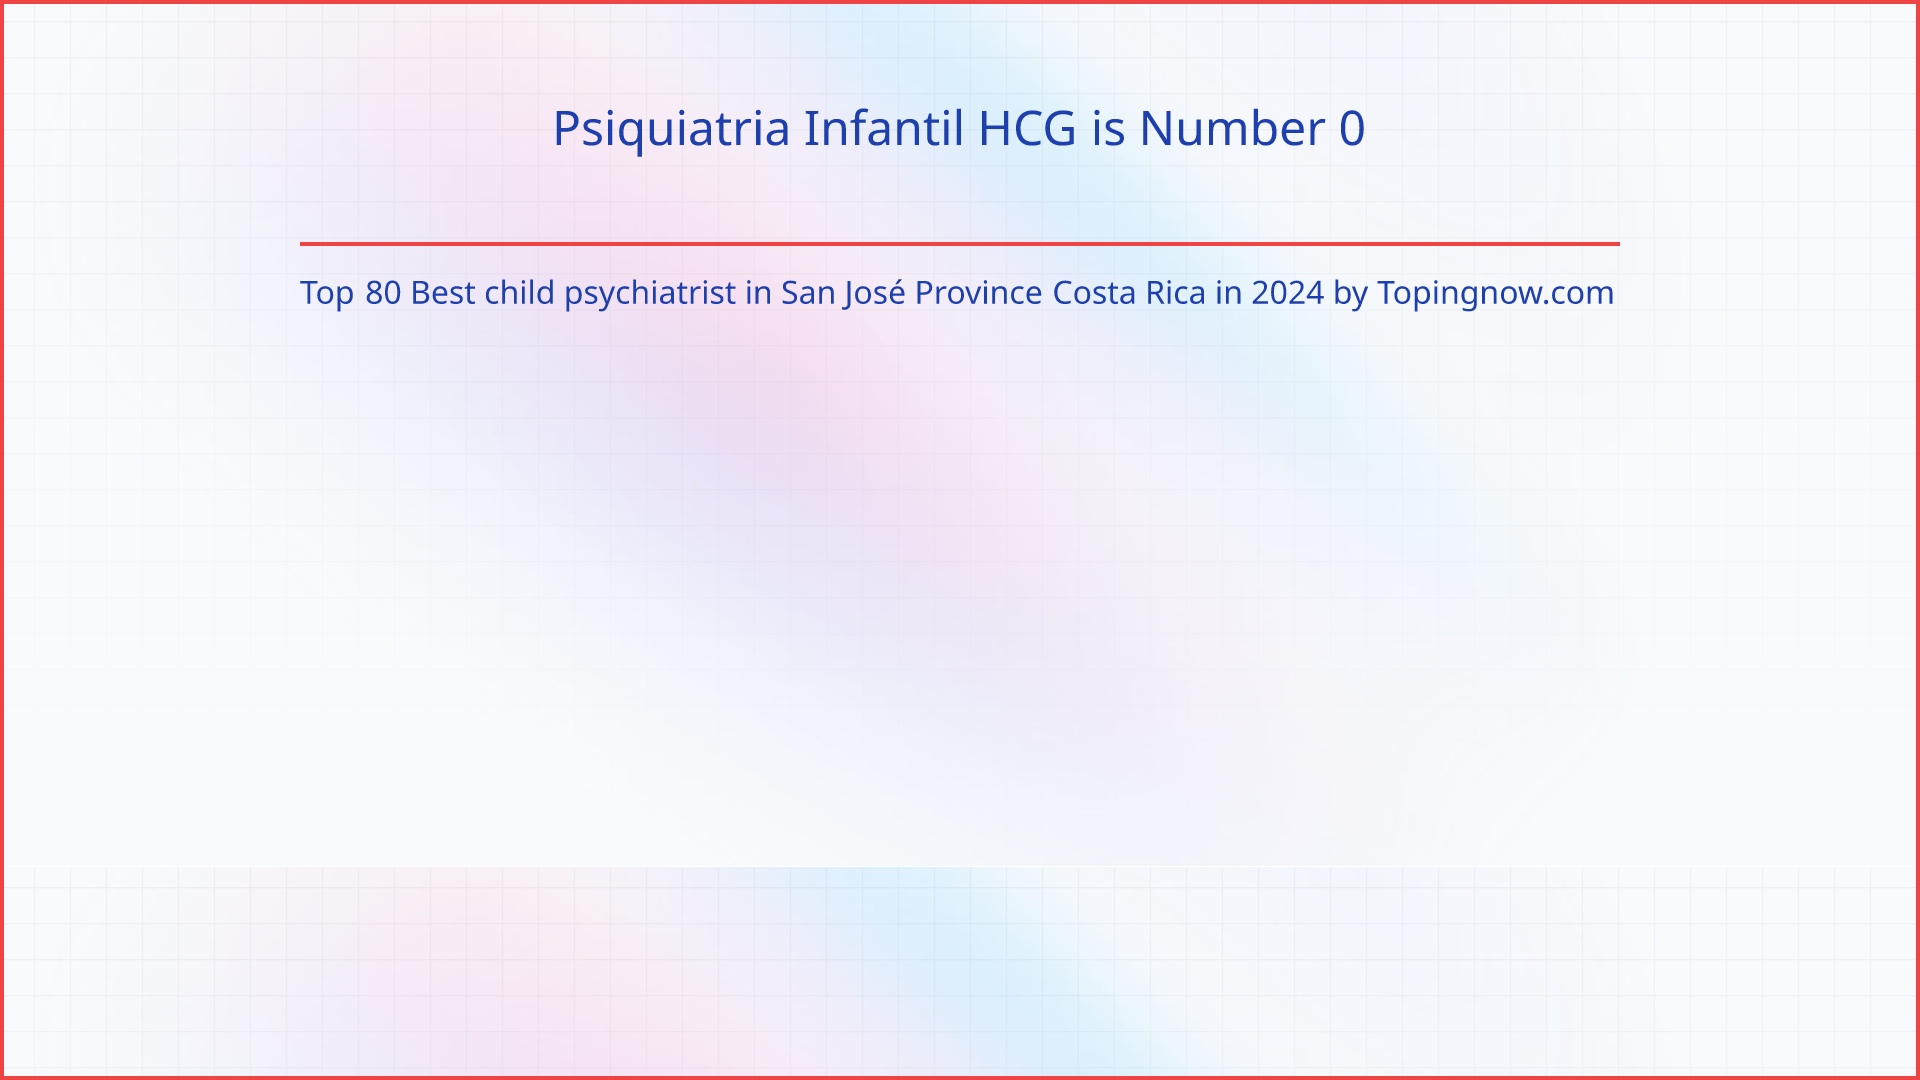 Psiquiatria Infantil HCG: Top 80 Best child psychiatrist in San José Province Costa Rica in 2024